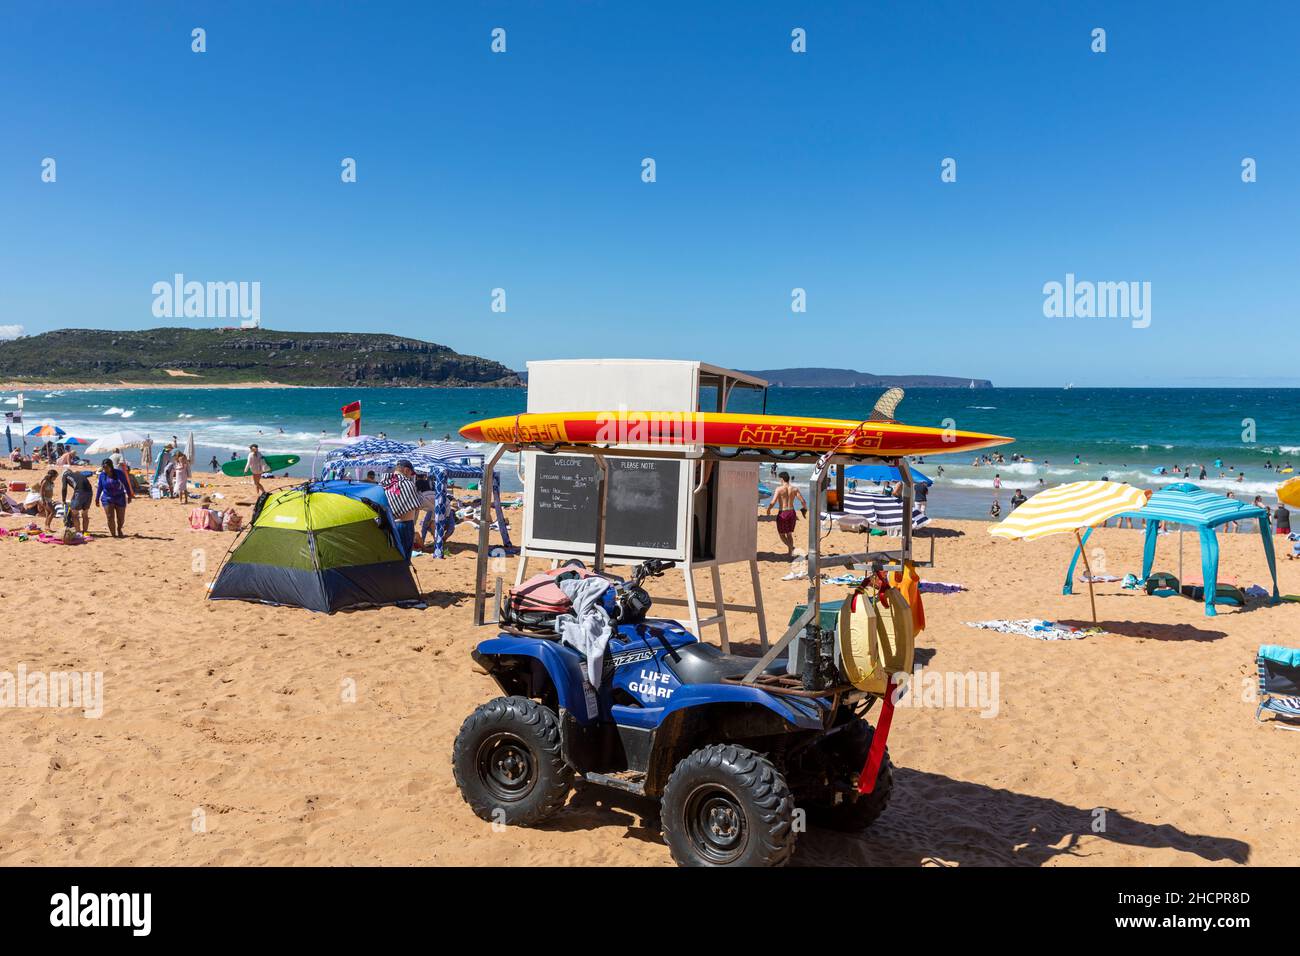 Stazione di bagnino a Palm Beach Sydney, NSW, Australia in una giornata estiva con cielo blu chiaro Foto Stock